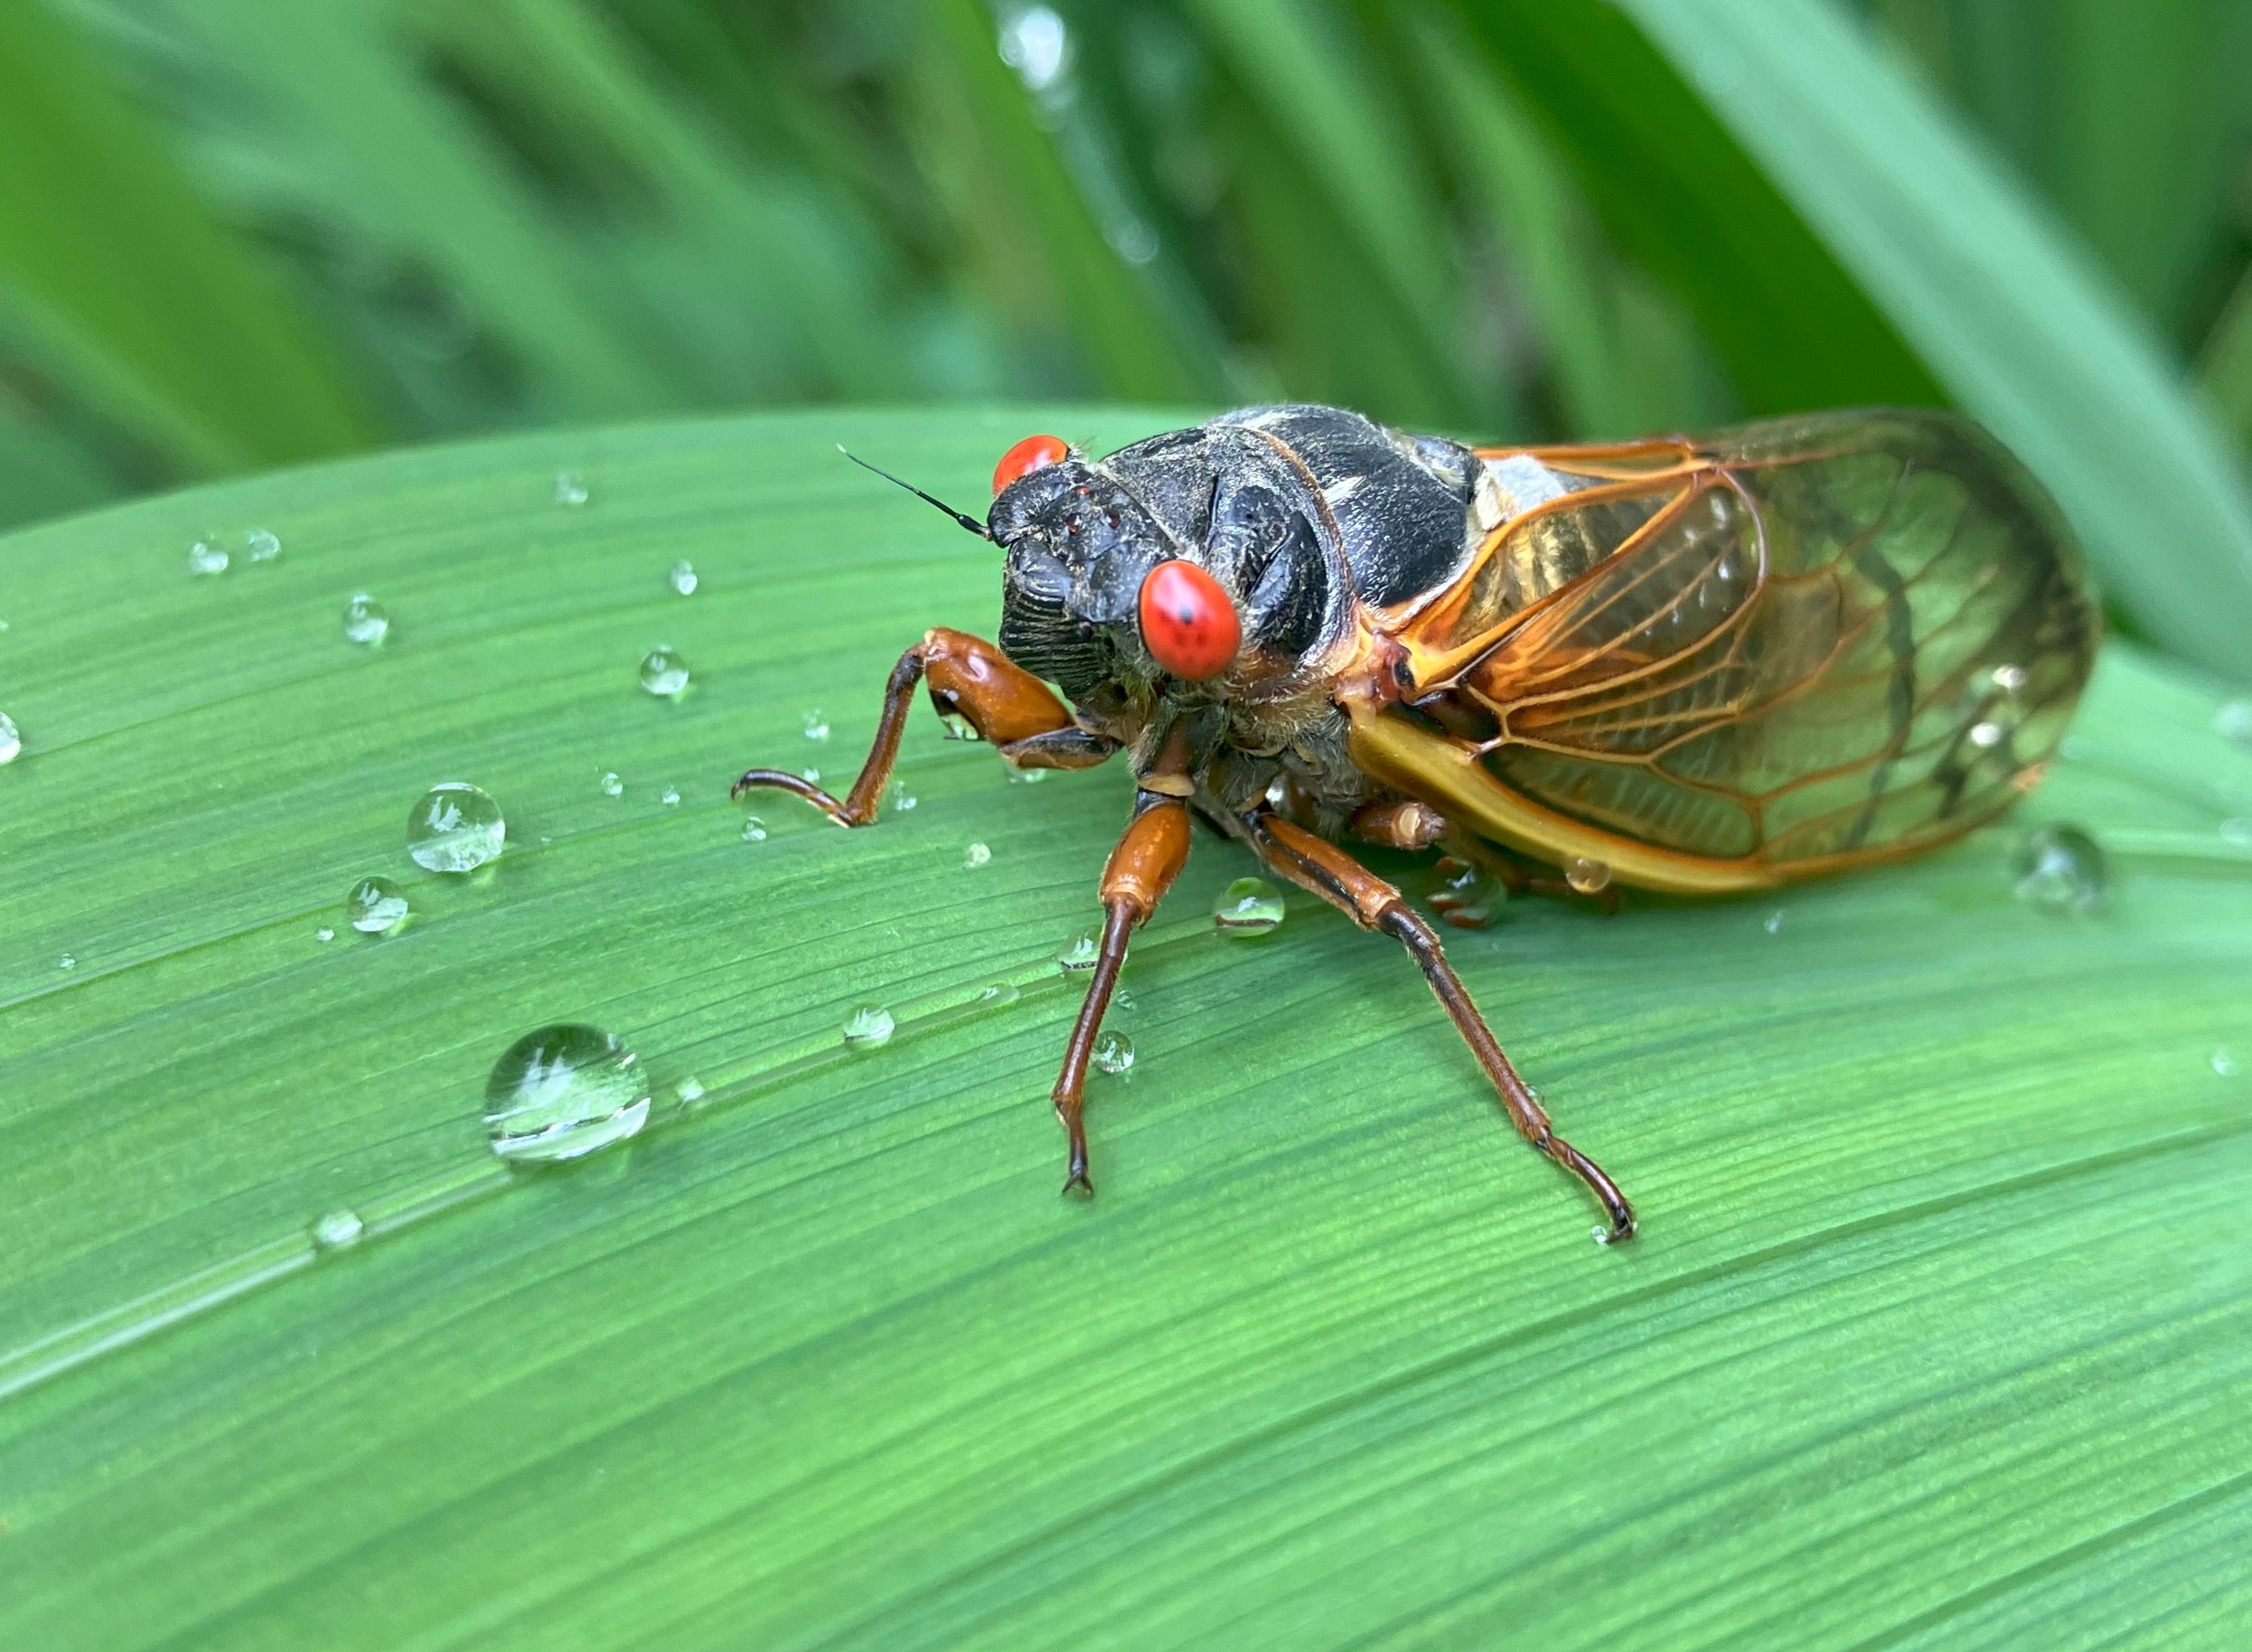 An adult cicada is sitting on a leaf